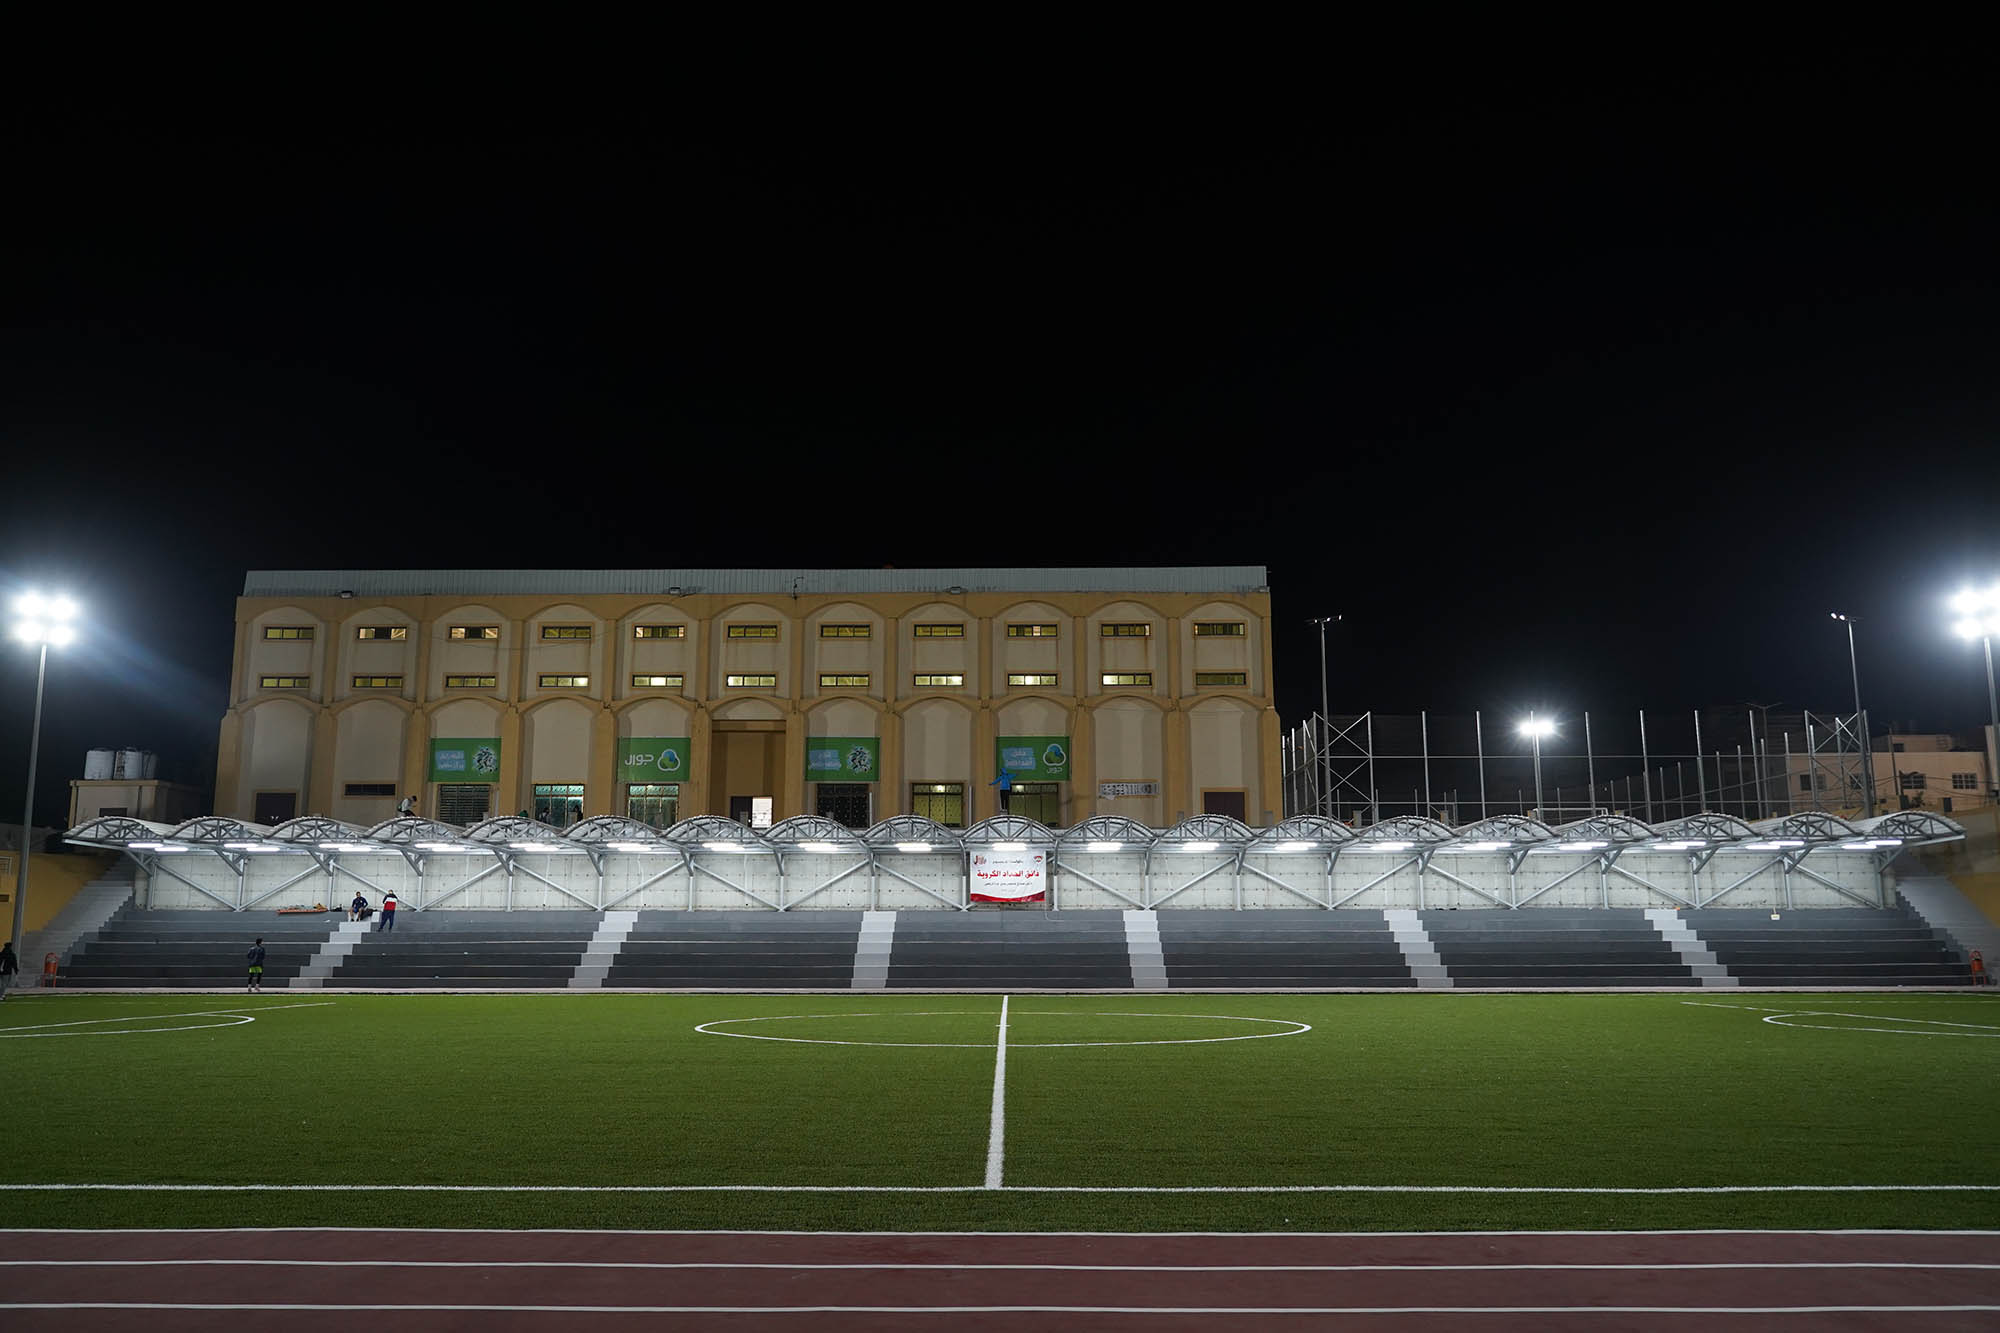 Gaza sports club football field at night.